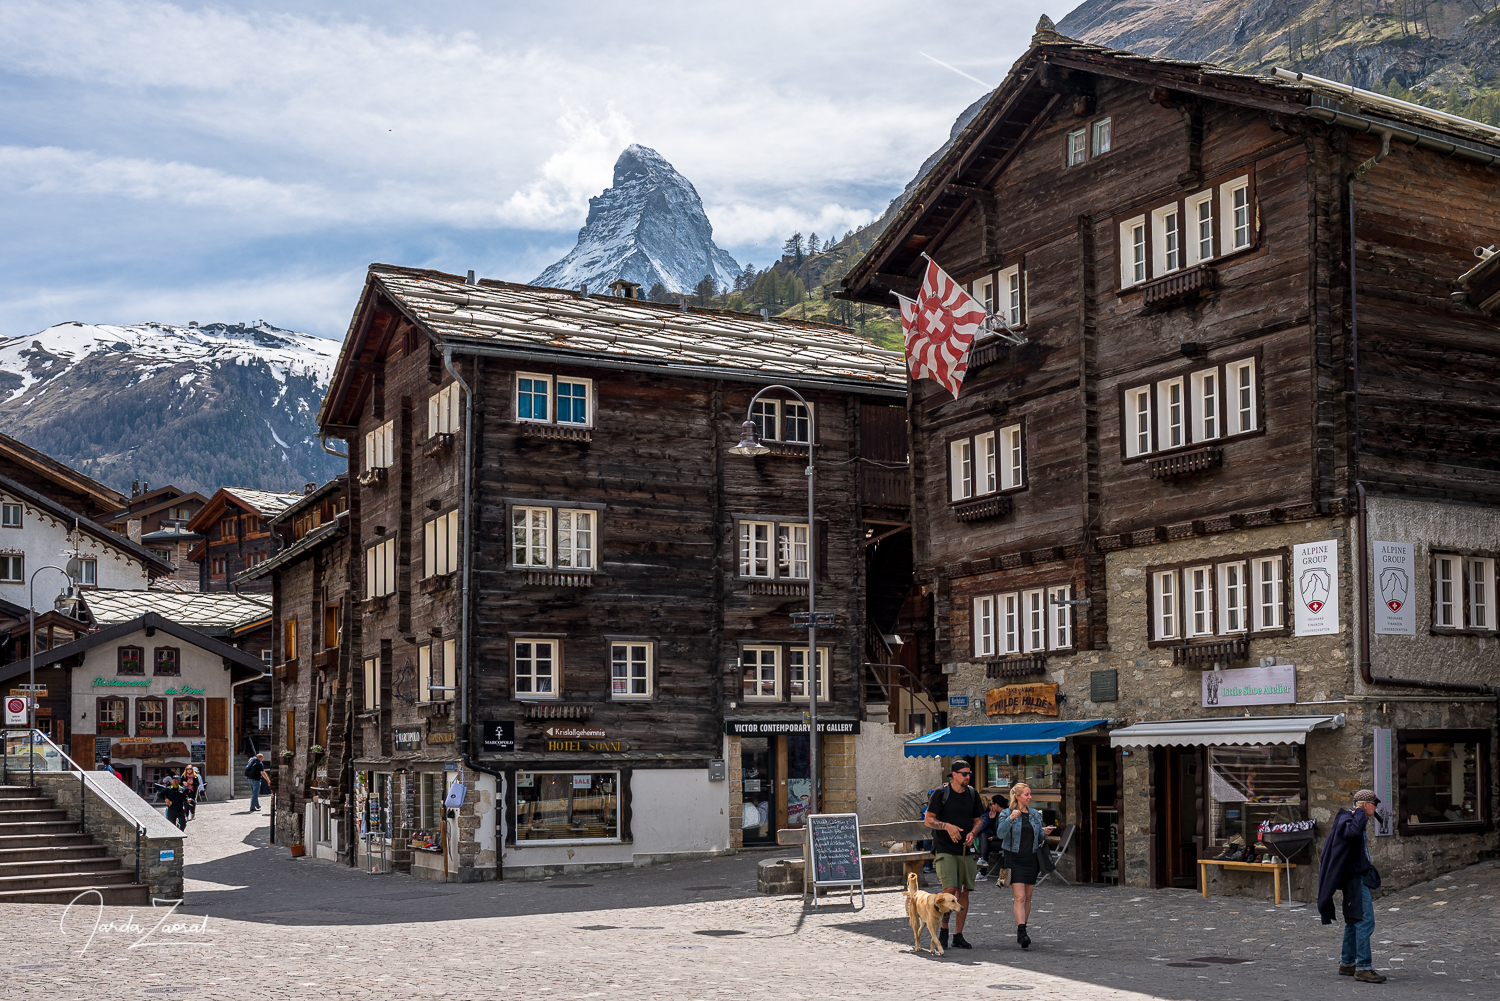 View at Zermatt village and mountain Matterhorn